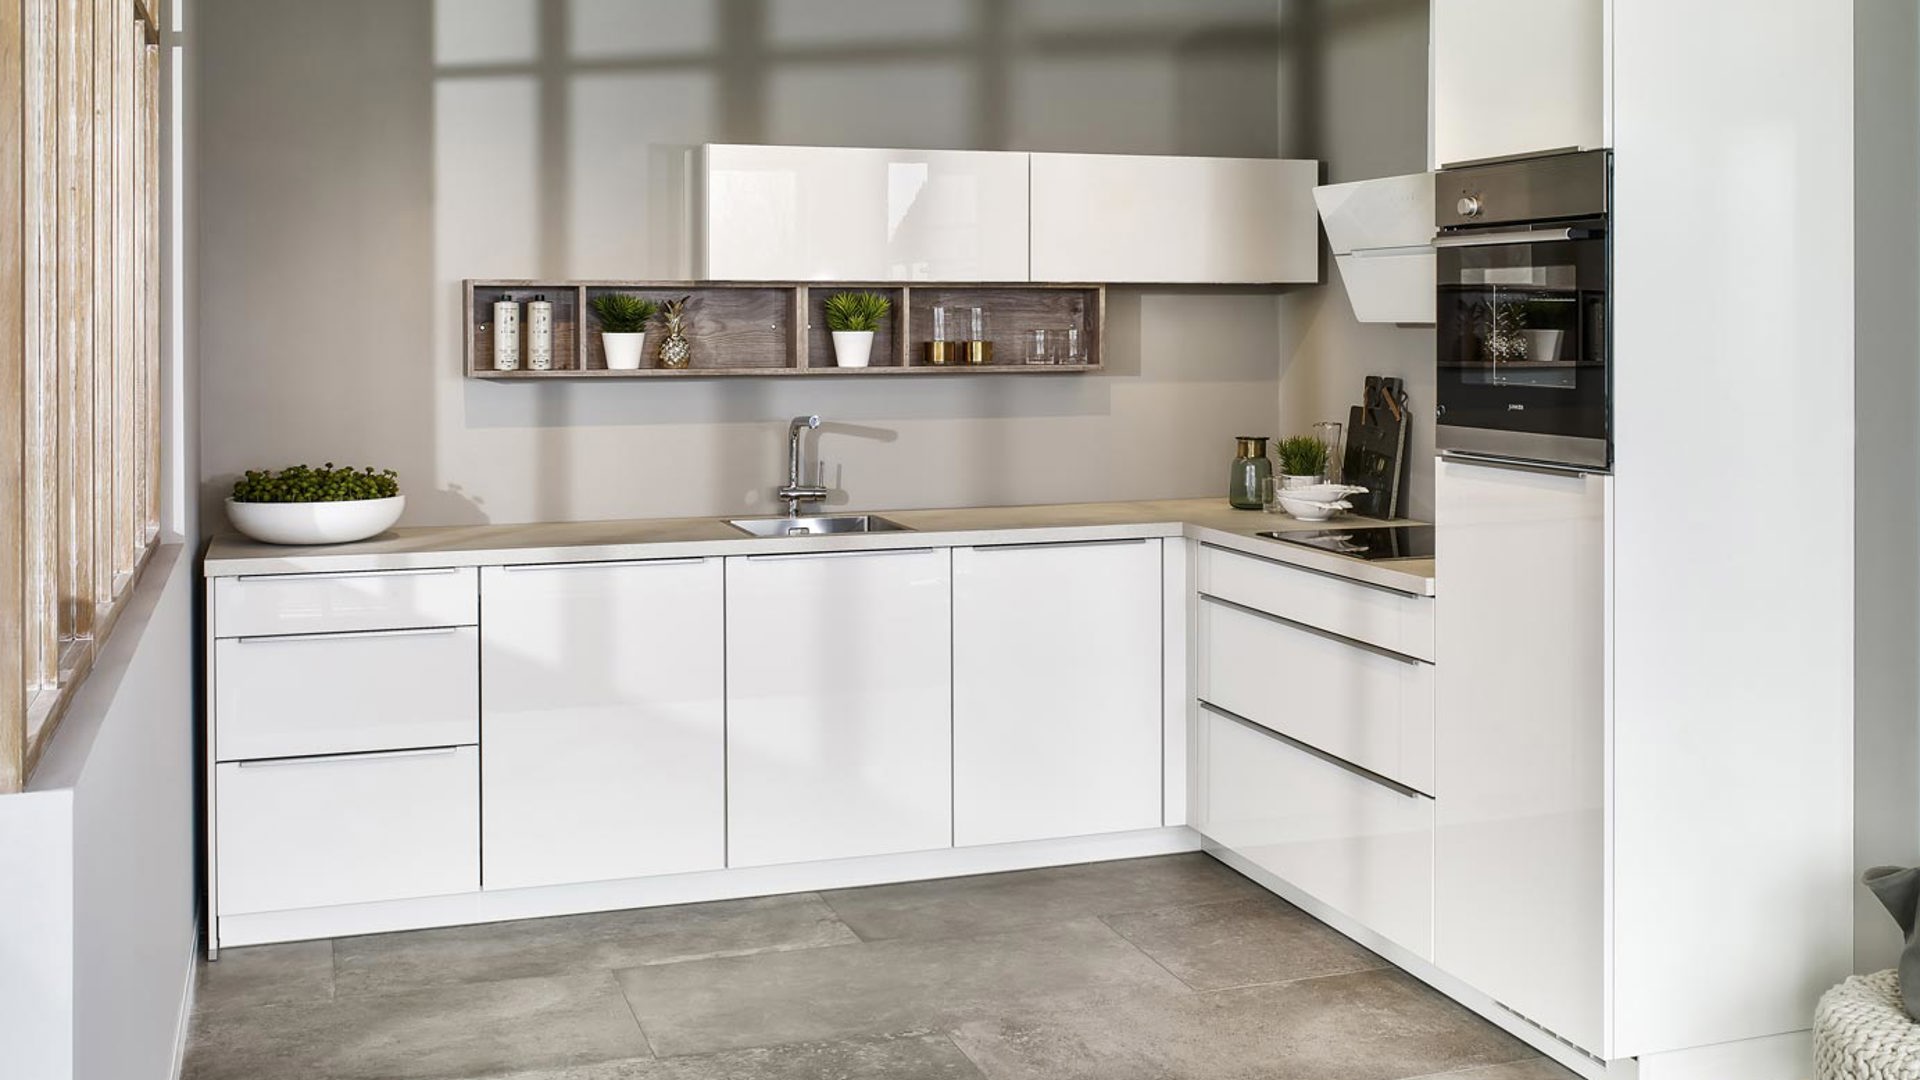 Moderne hoogglans keuken in hoekopstelling en met greeploze fronten. Bekijk meer foto's op de website.